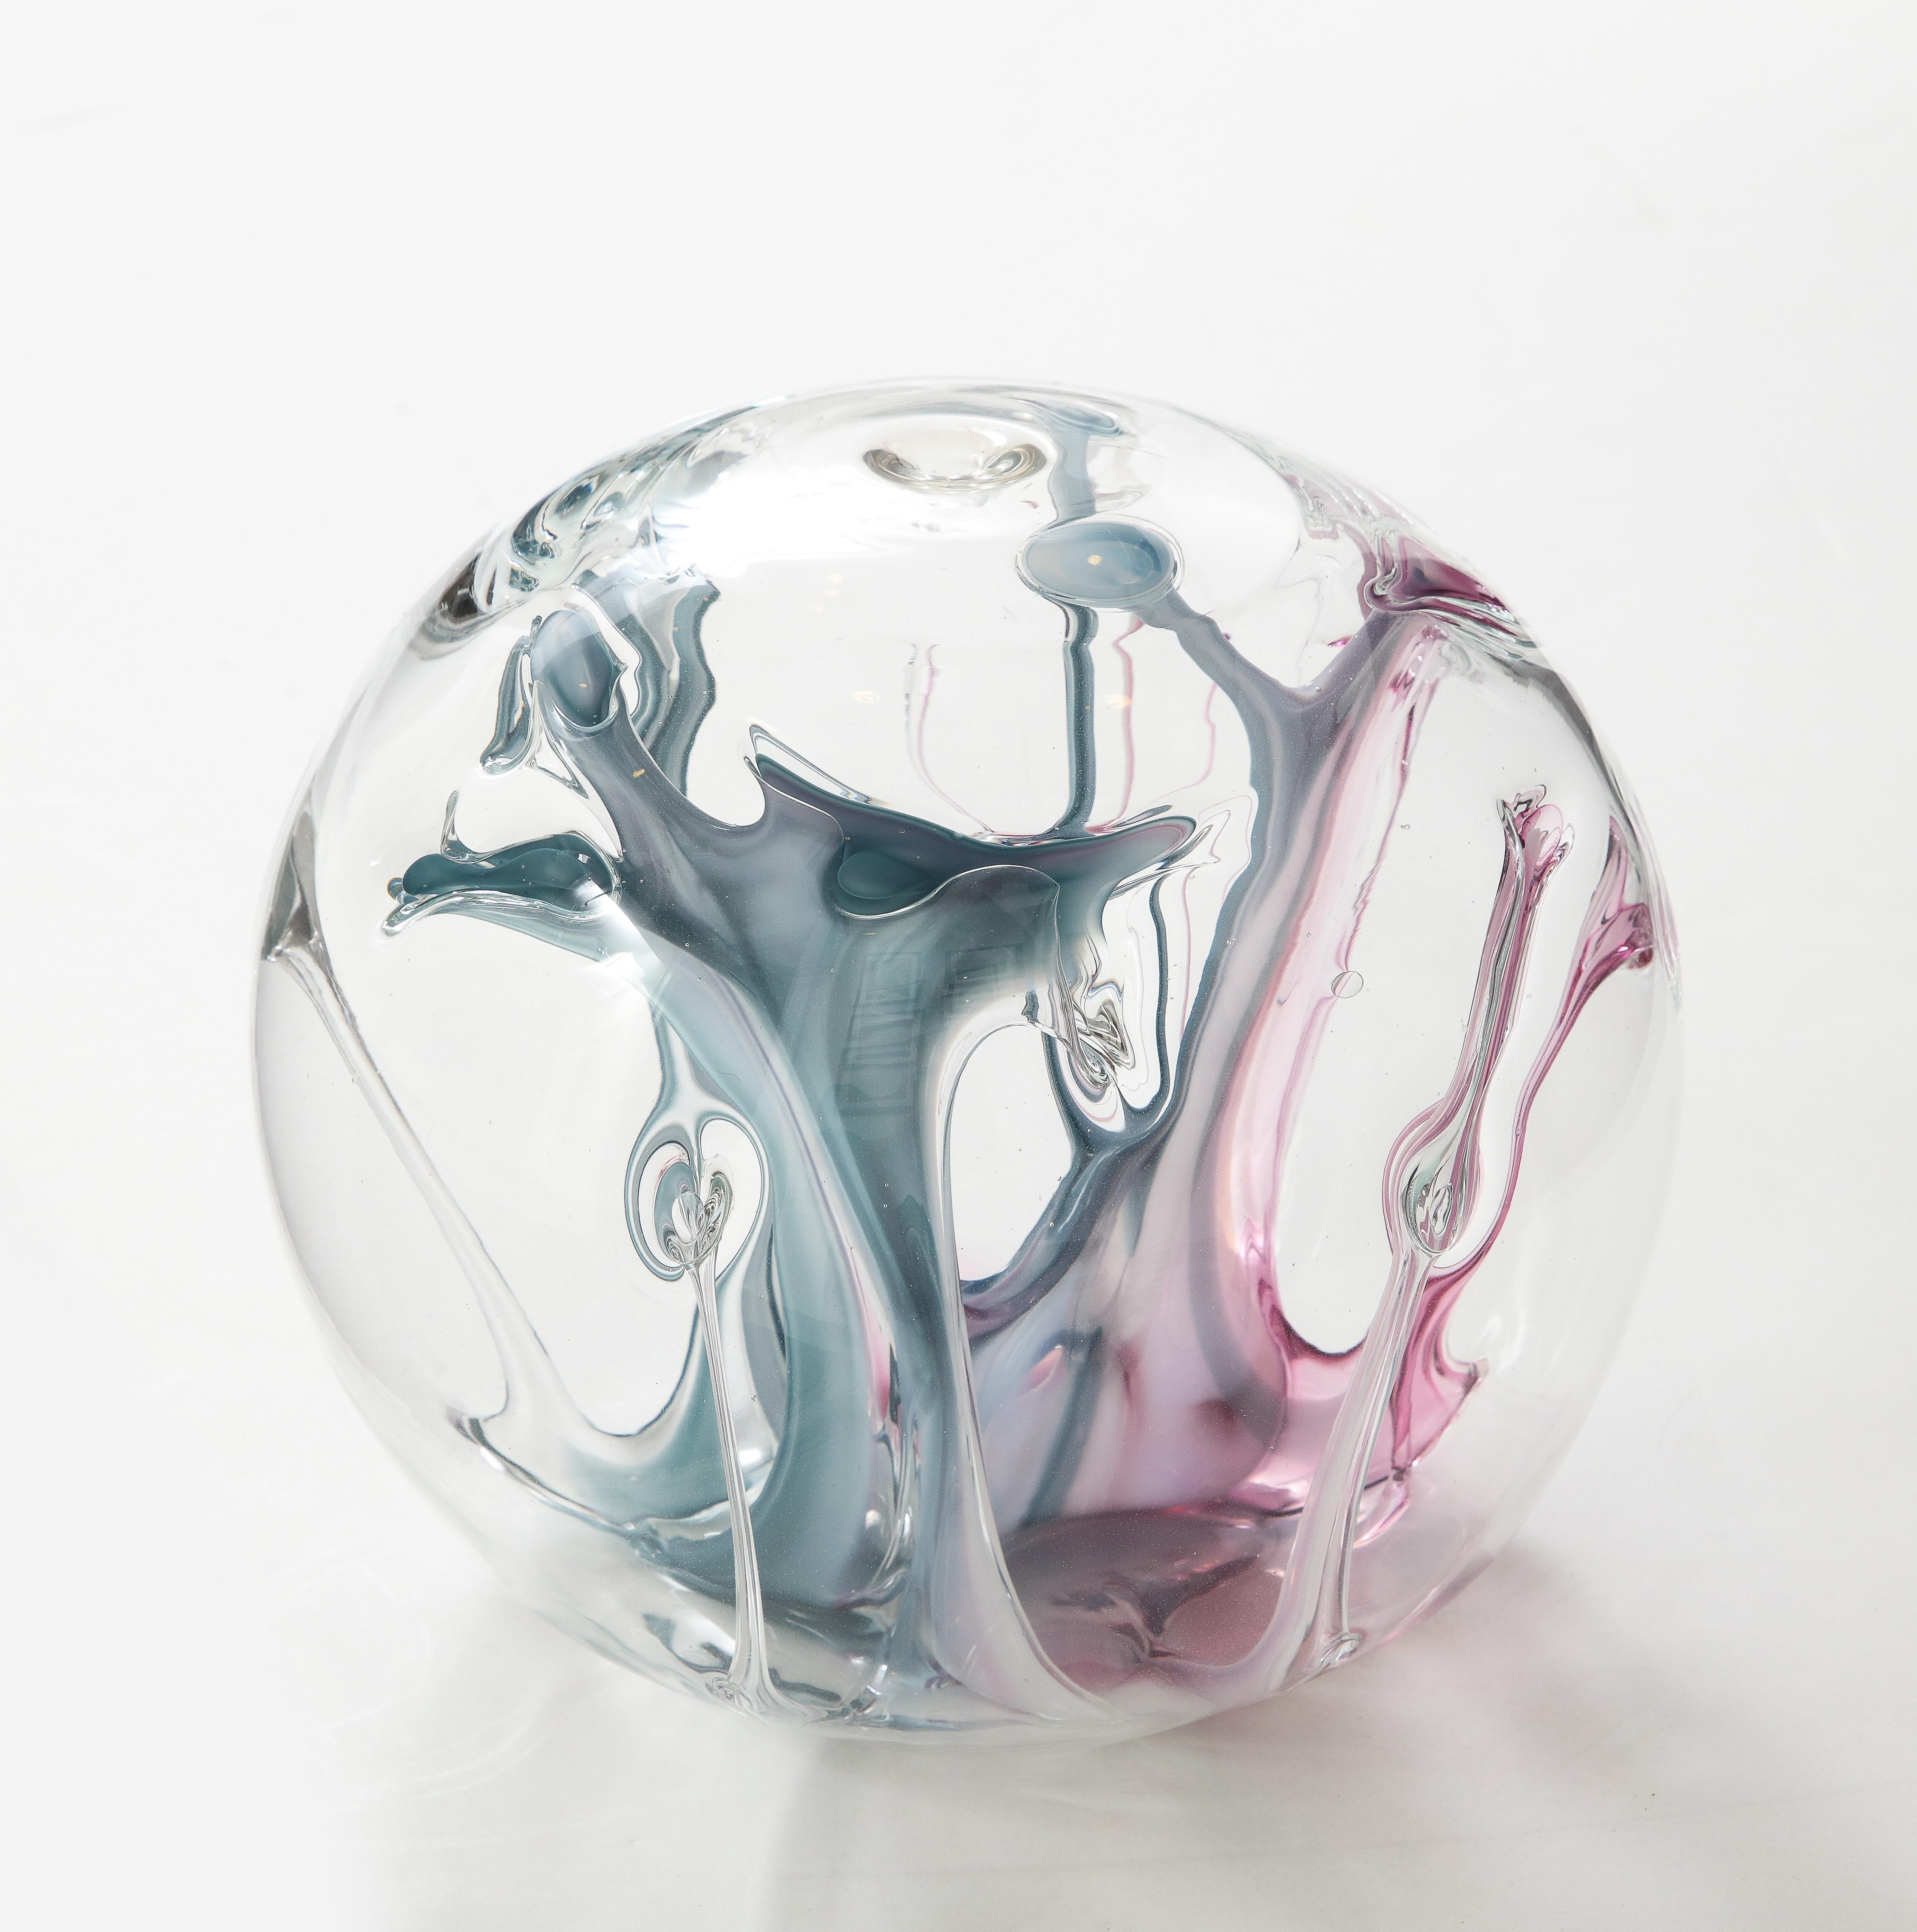 Spectaculaire sculpture orbitale en verre soufflé à la bouche avec des fils de verre magenta et bleu pétrole à l'intérieur. Signé en bas, Peter Bramhall.